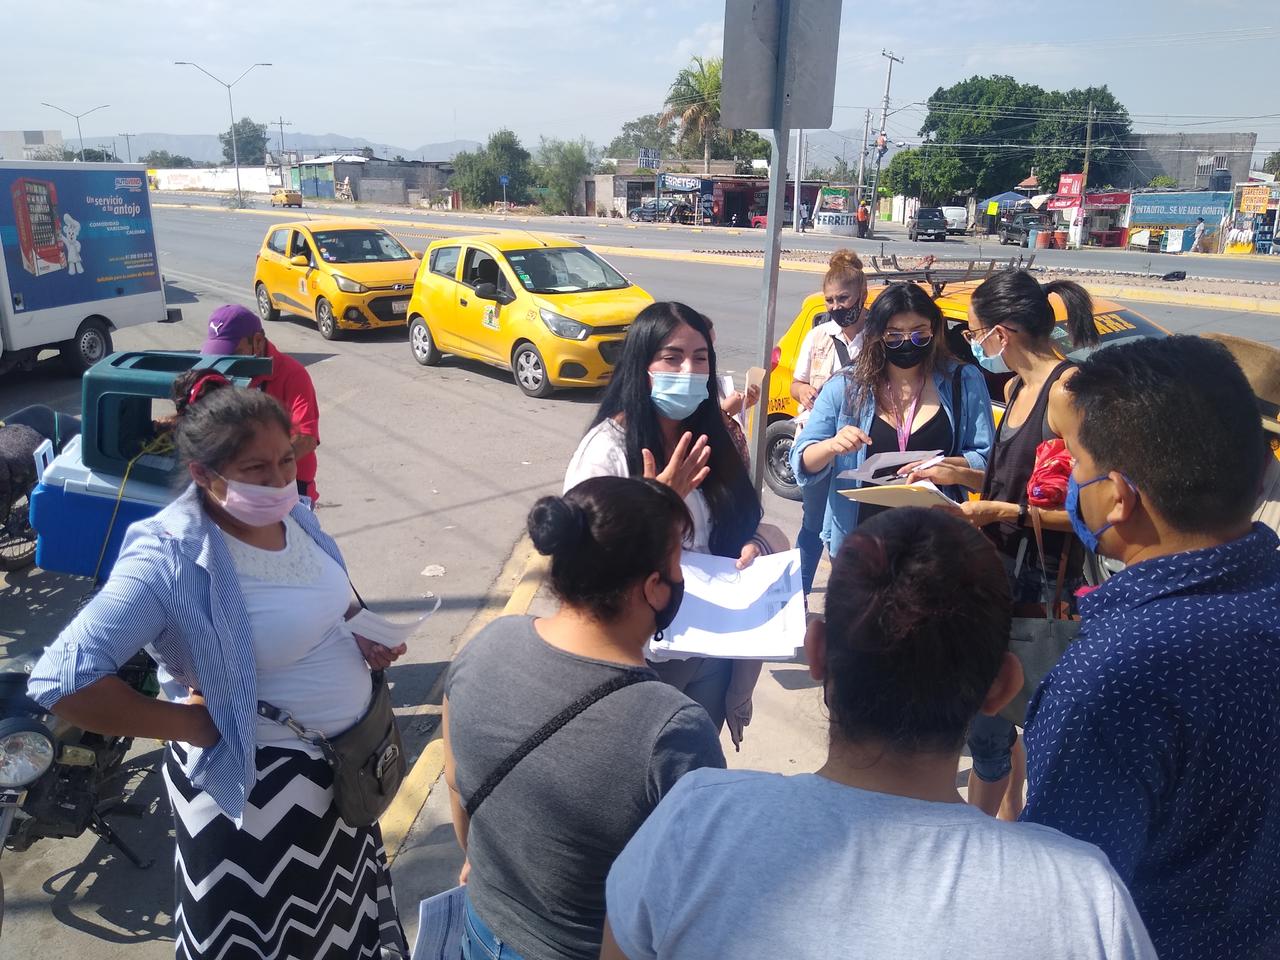 Bienestar pide 'paciencia' tras bloqueos en Torreón por vacunas antiCOVID agotadas